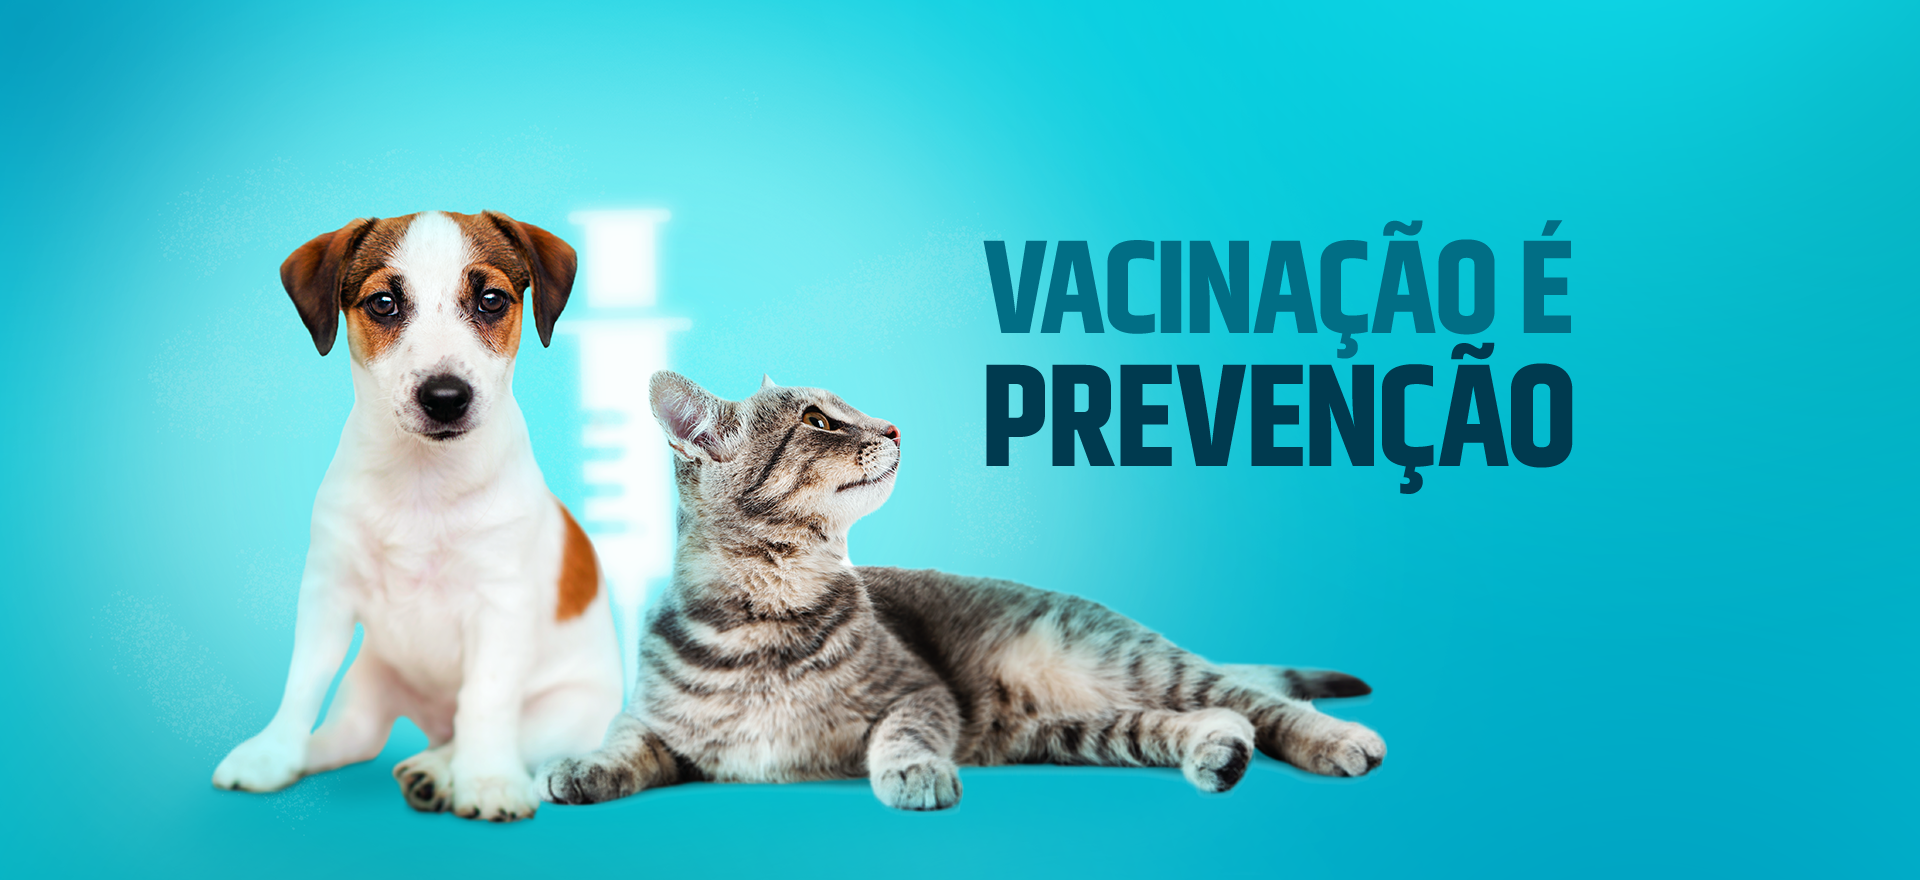 Vacinação é prevenção!